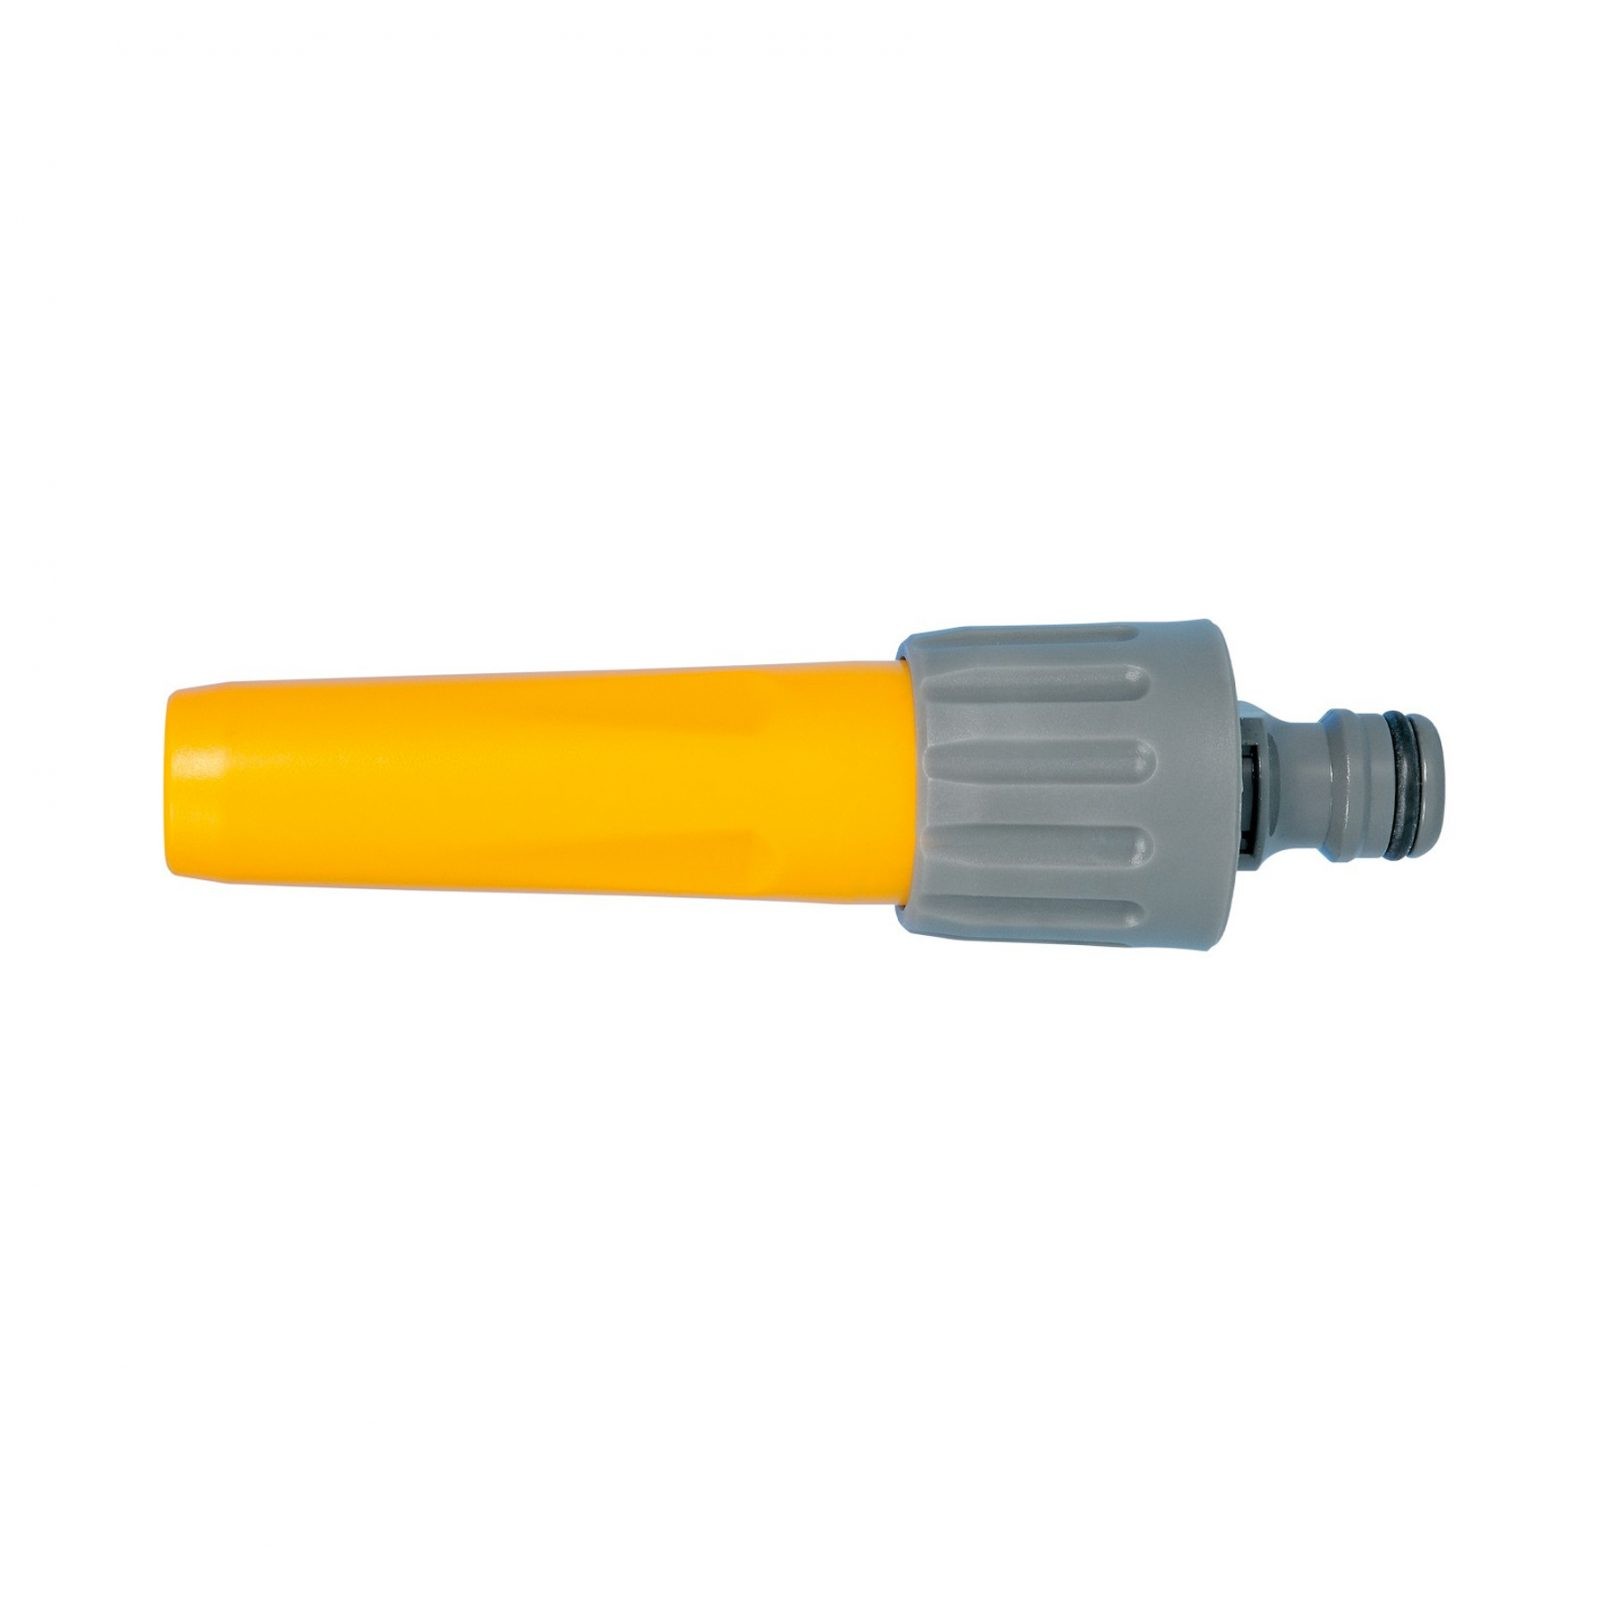 Adjustable Spray Nozzle For a Garden Hose SHF50 Usable With Hozelock SUPAGARDEN 